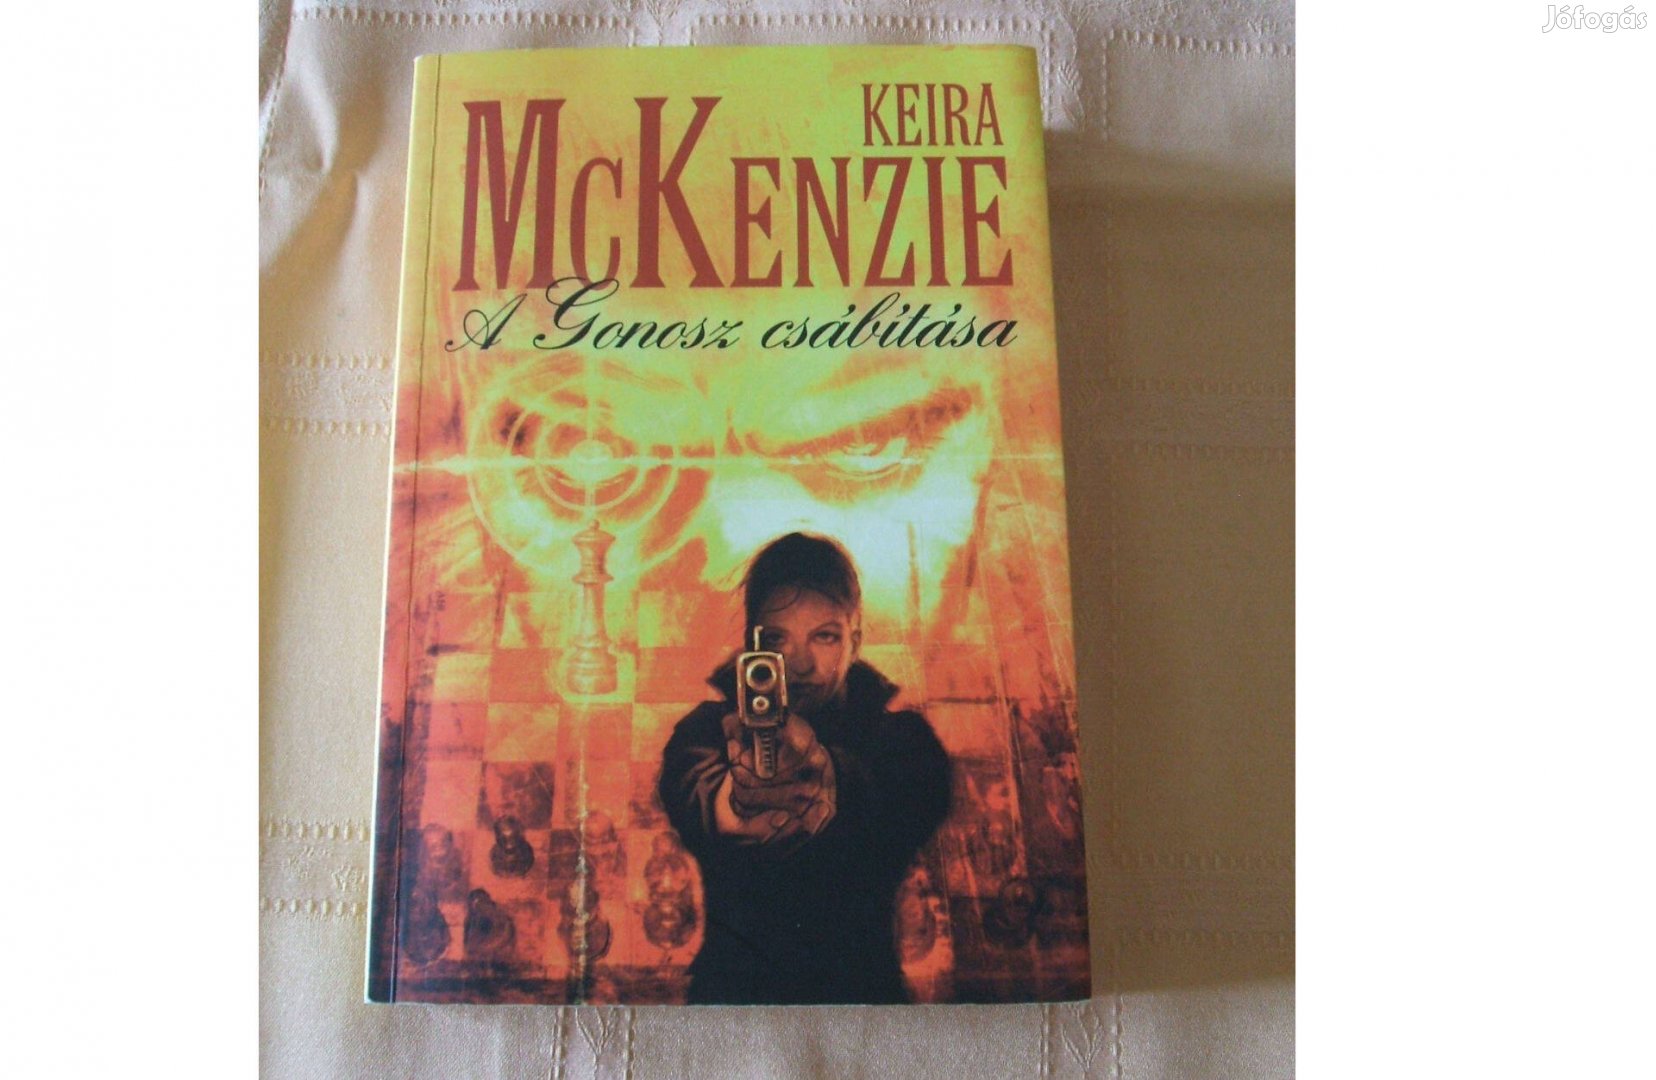 Keira Mckenzie - A Gonosz csábítása